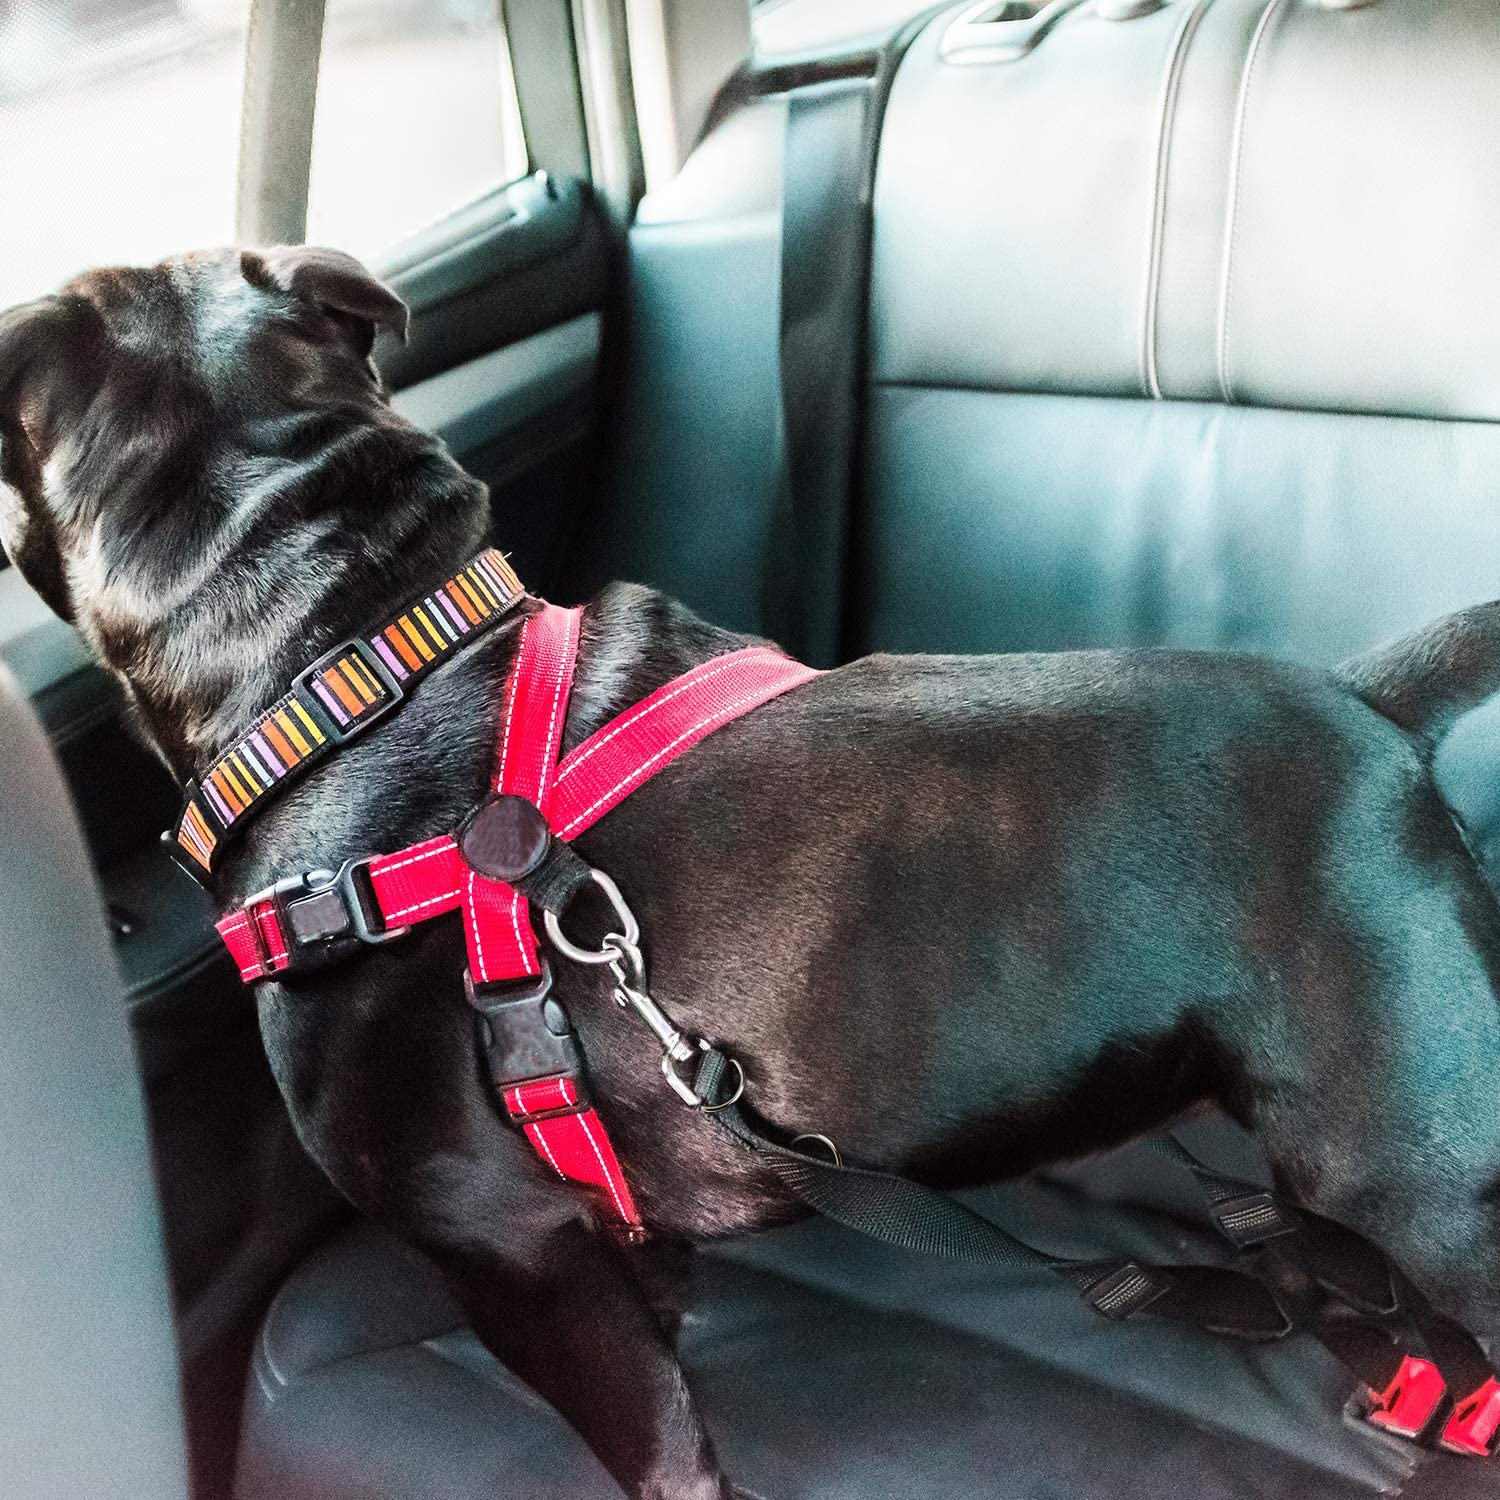  Cinturón de seguridad para perros + correa doble gancho ajustable | Enganche de una o dos mascotas para viaje en coche con doble anclaje | Dispensador de bolsas orgánicas gratis con tu compra 